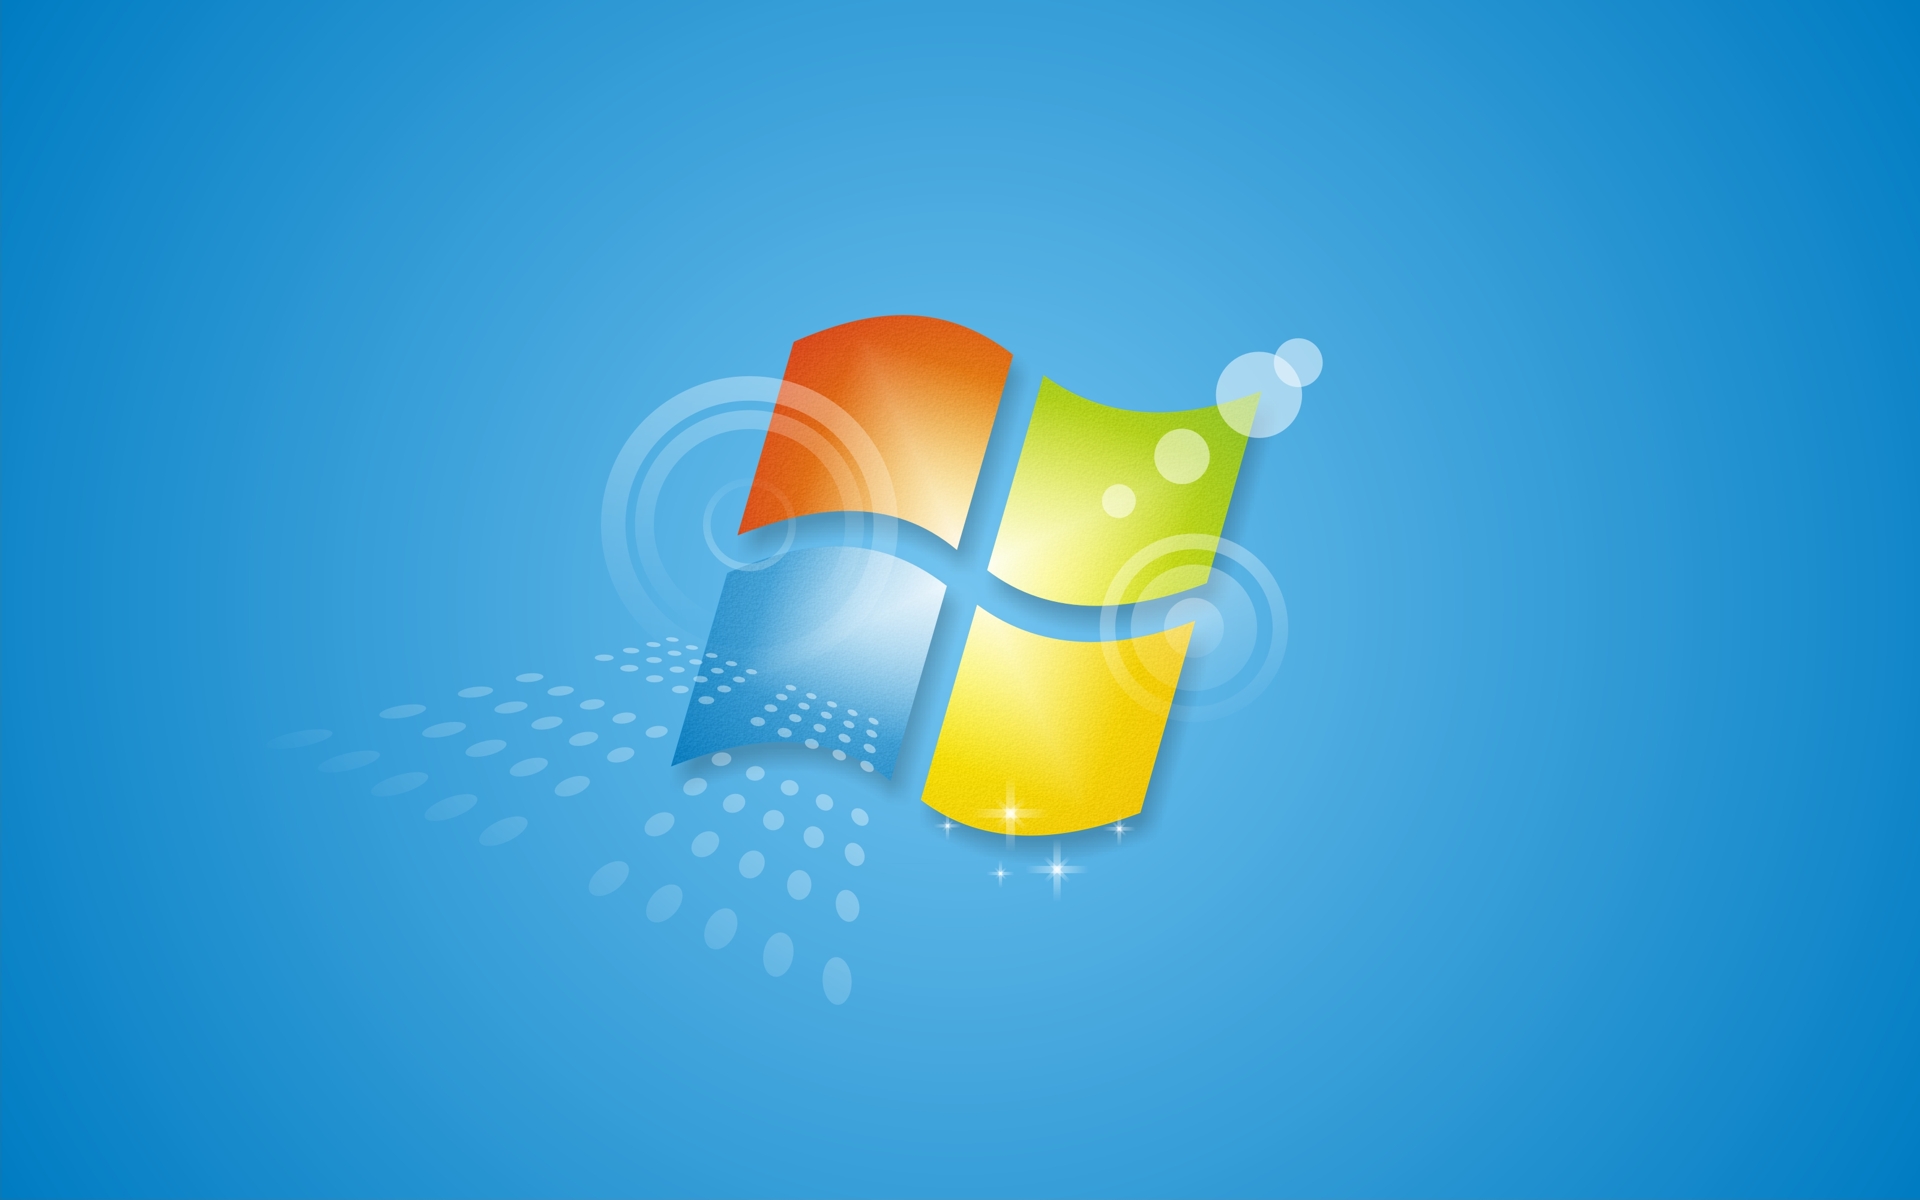 Hãy truy cập fanpop để tìm kiếm hình nền Windows 7 nổi bật và được yêu thích nhất. Tất cả đều có sẵn trong bộ sưu tập với độ phân giải cao